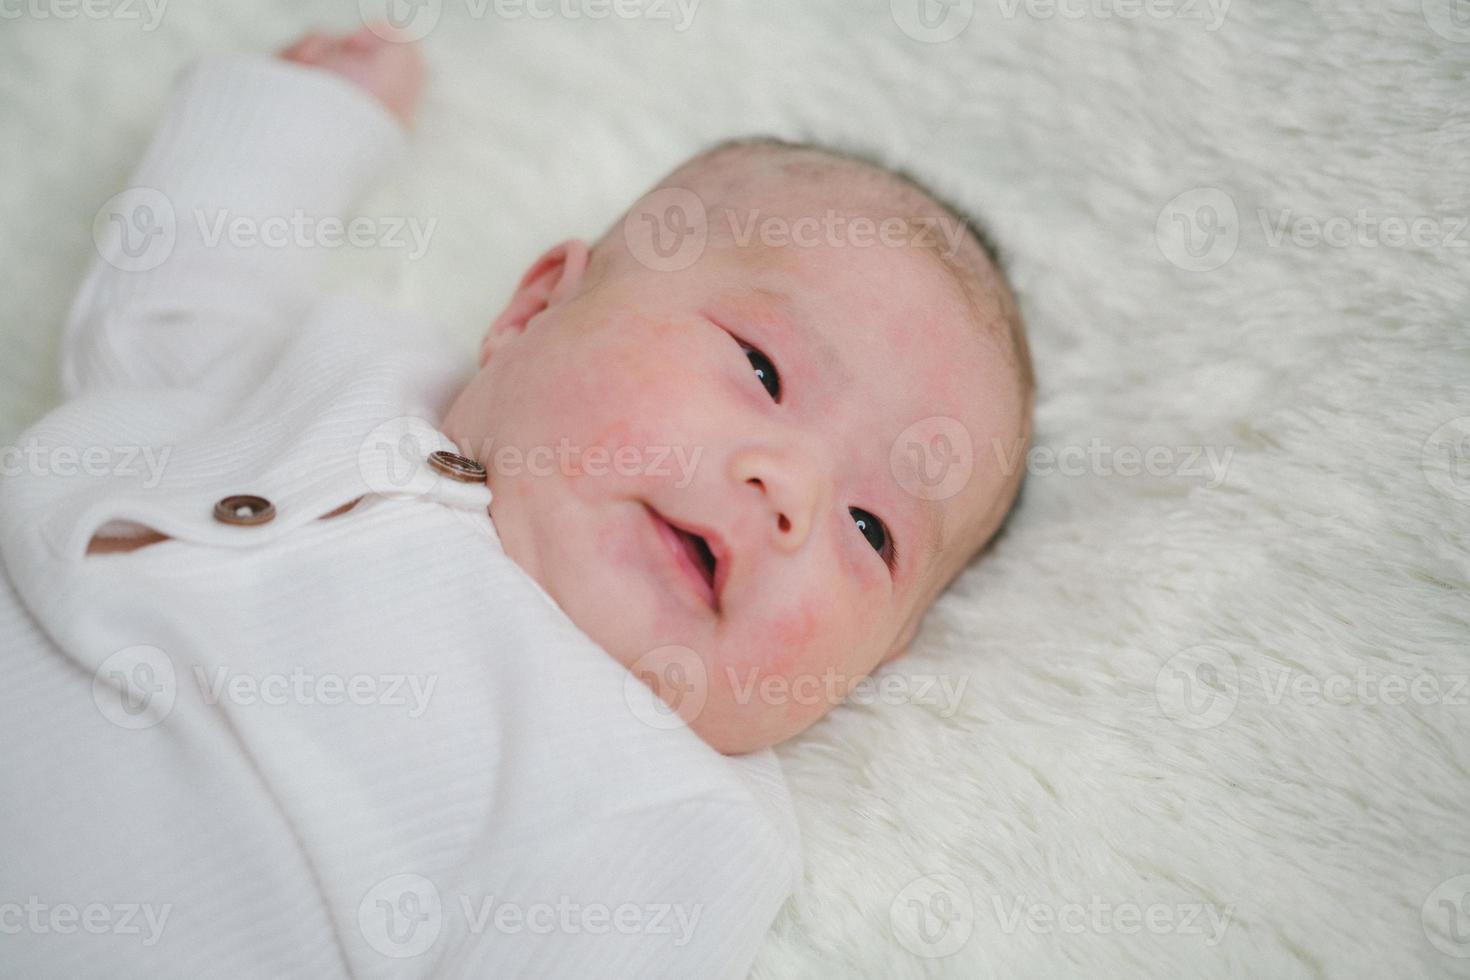 primer plano lindo bebé recién nacido en traje blanco acostado solo en la cama. adorable bebé descansa sobre sábanas blancas, mirando a la cámara con aspecto pacífico. infancia, salud y pediatría, concepto de infancia foto